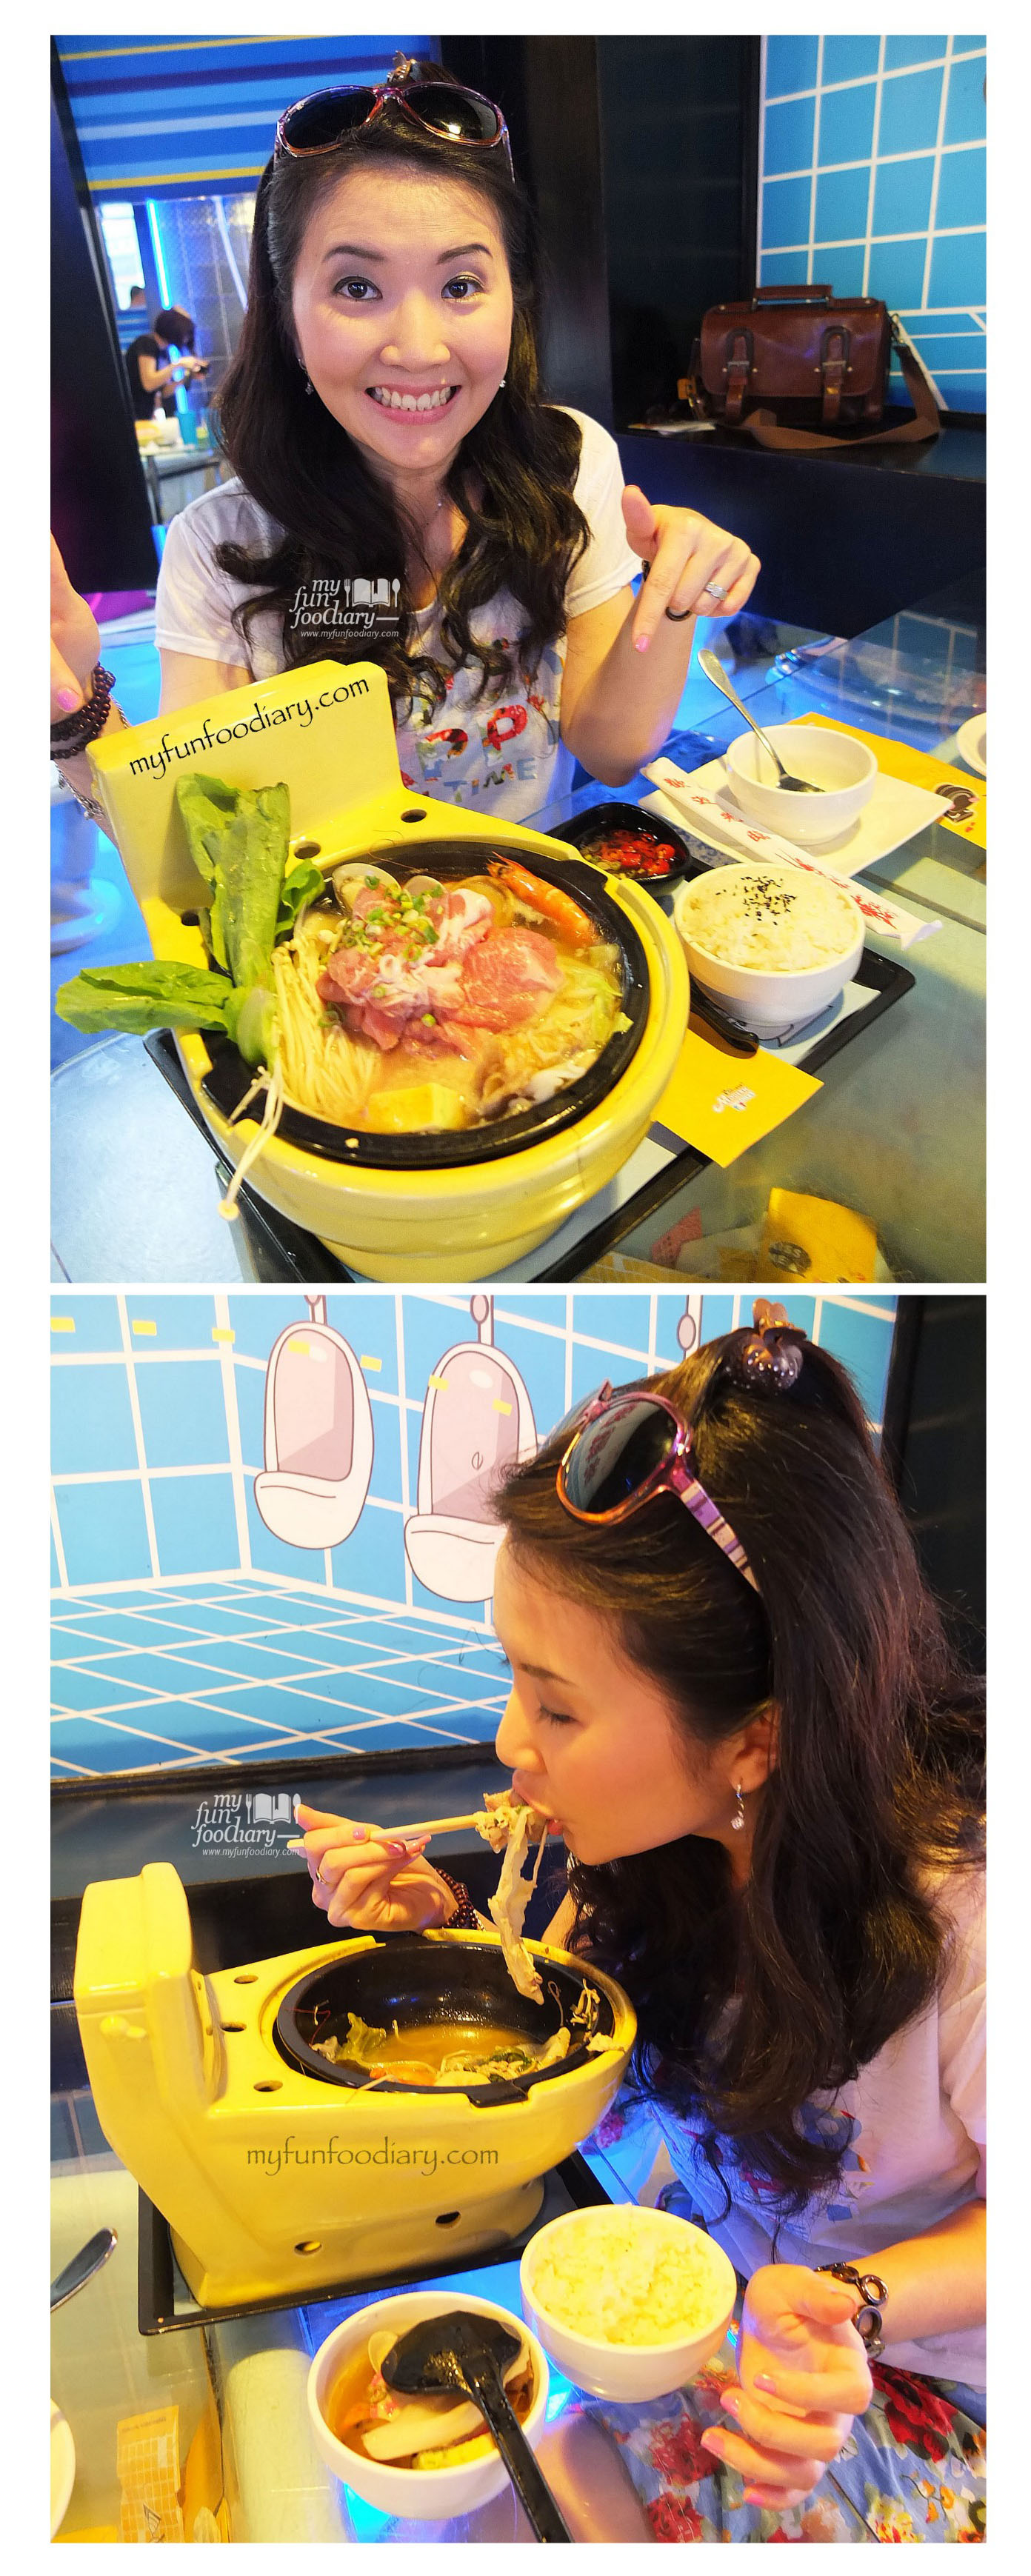 Enjoying Yummy Signature Modern Hot Pot at Modern Toilet Cafe Taiwan - by Myfunfoodiary